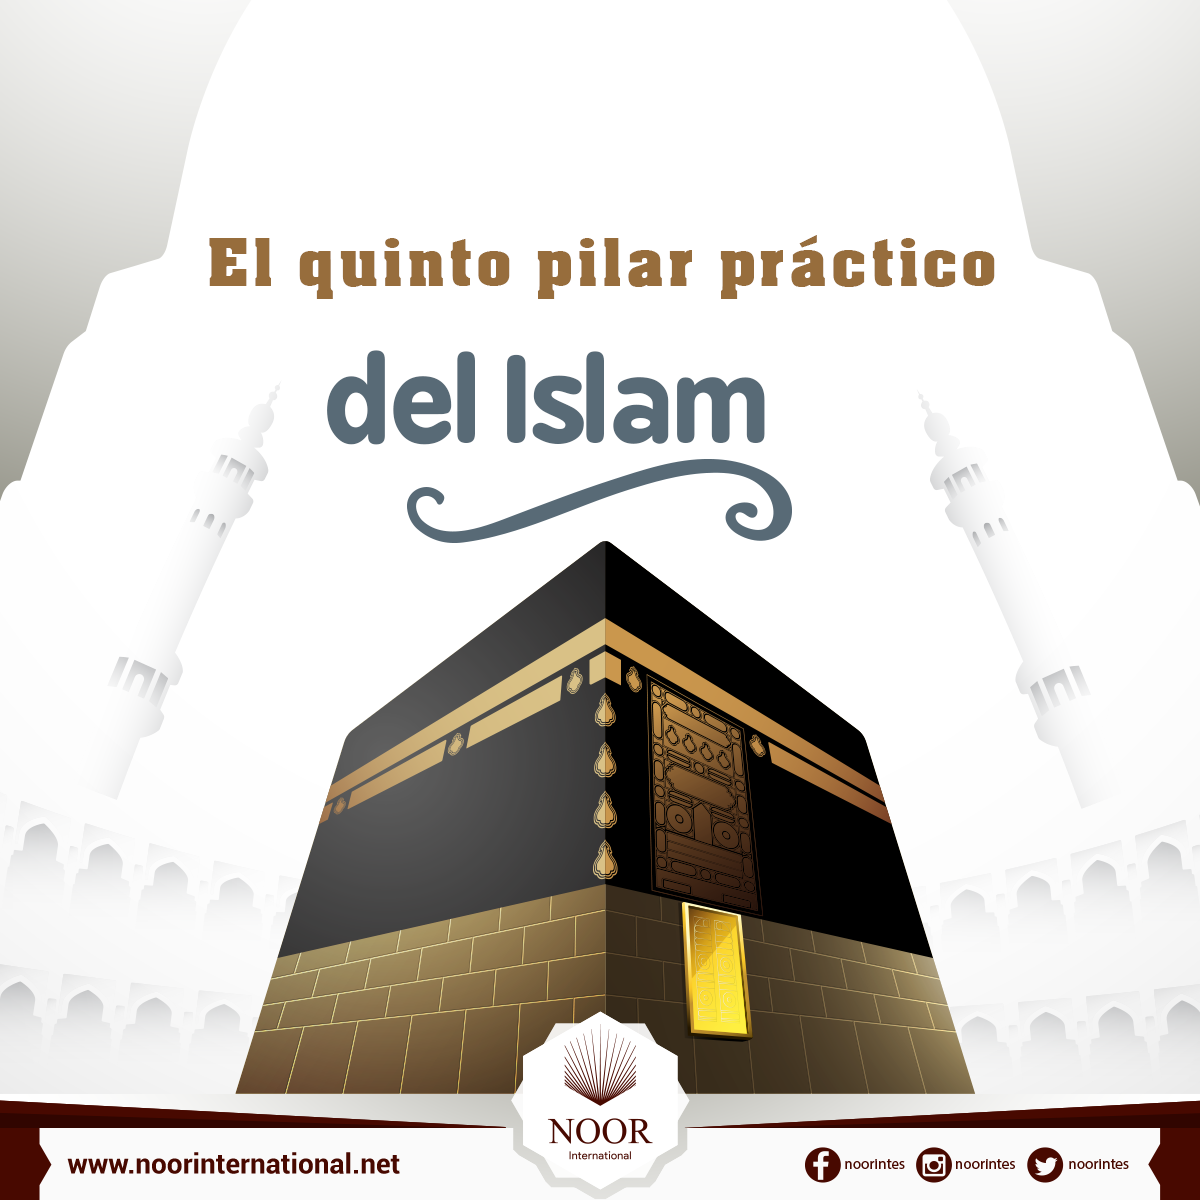 El quinto pilar práctico del Islam